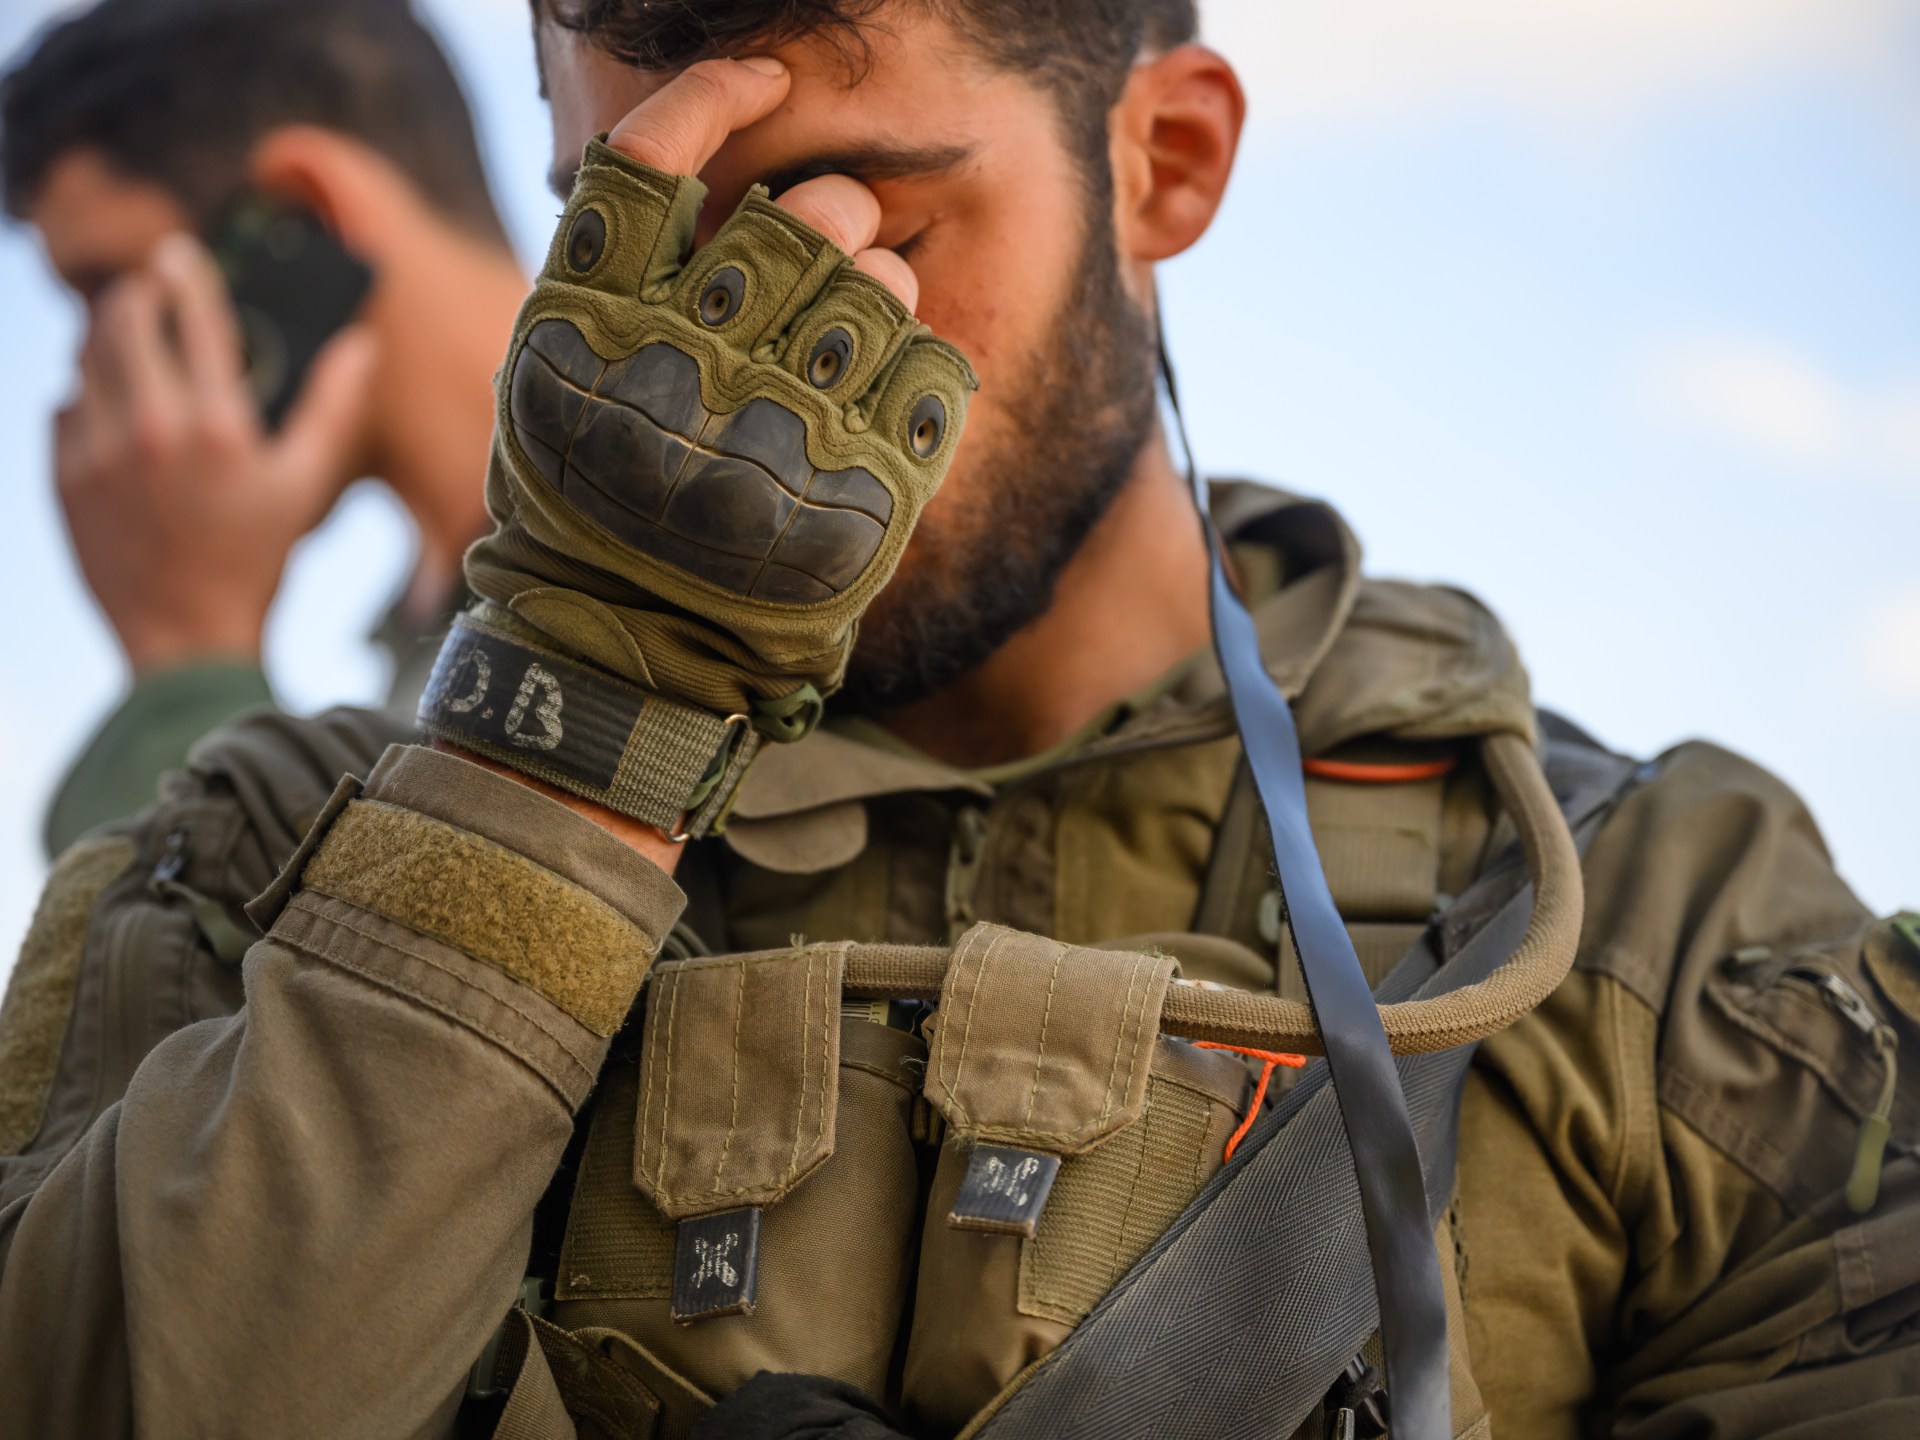 إصابات خطيرة في عيون 100 جندي إسرائيلي جراء معارك غزة